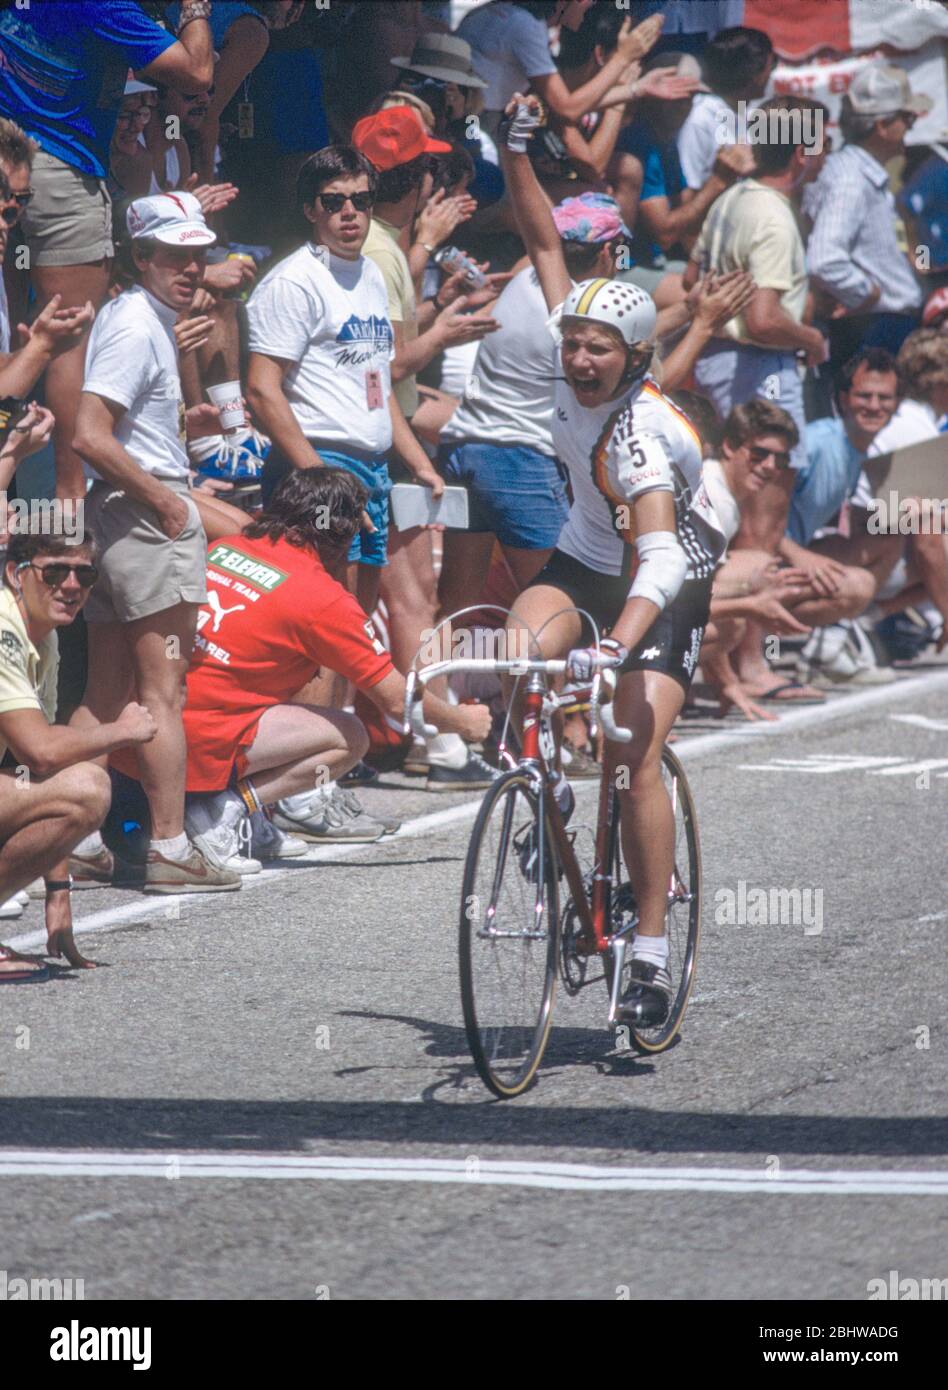 Die deutsche Radfahrerin Sandra Schumacher gewinnt die Etappe 10 beim Coors International Bicycle Classic Radrennen am 17. August 1985 in Boulder, CO. Foto von Francis Specker Stockfoto